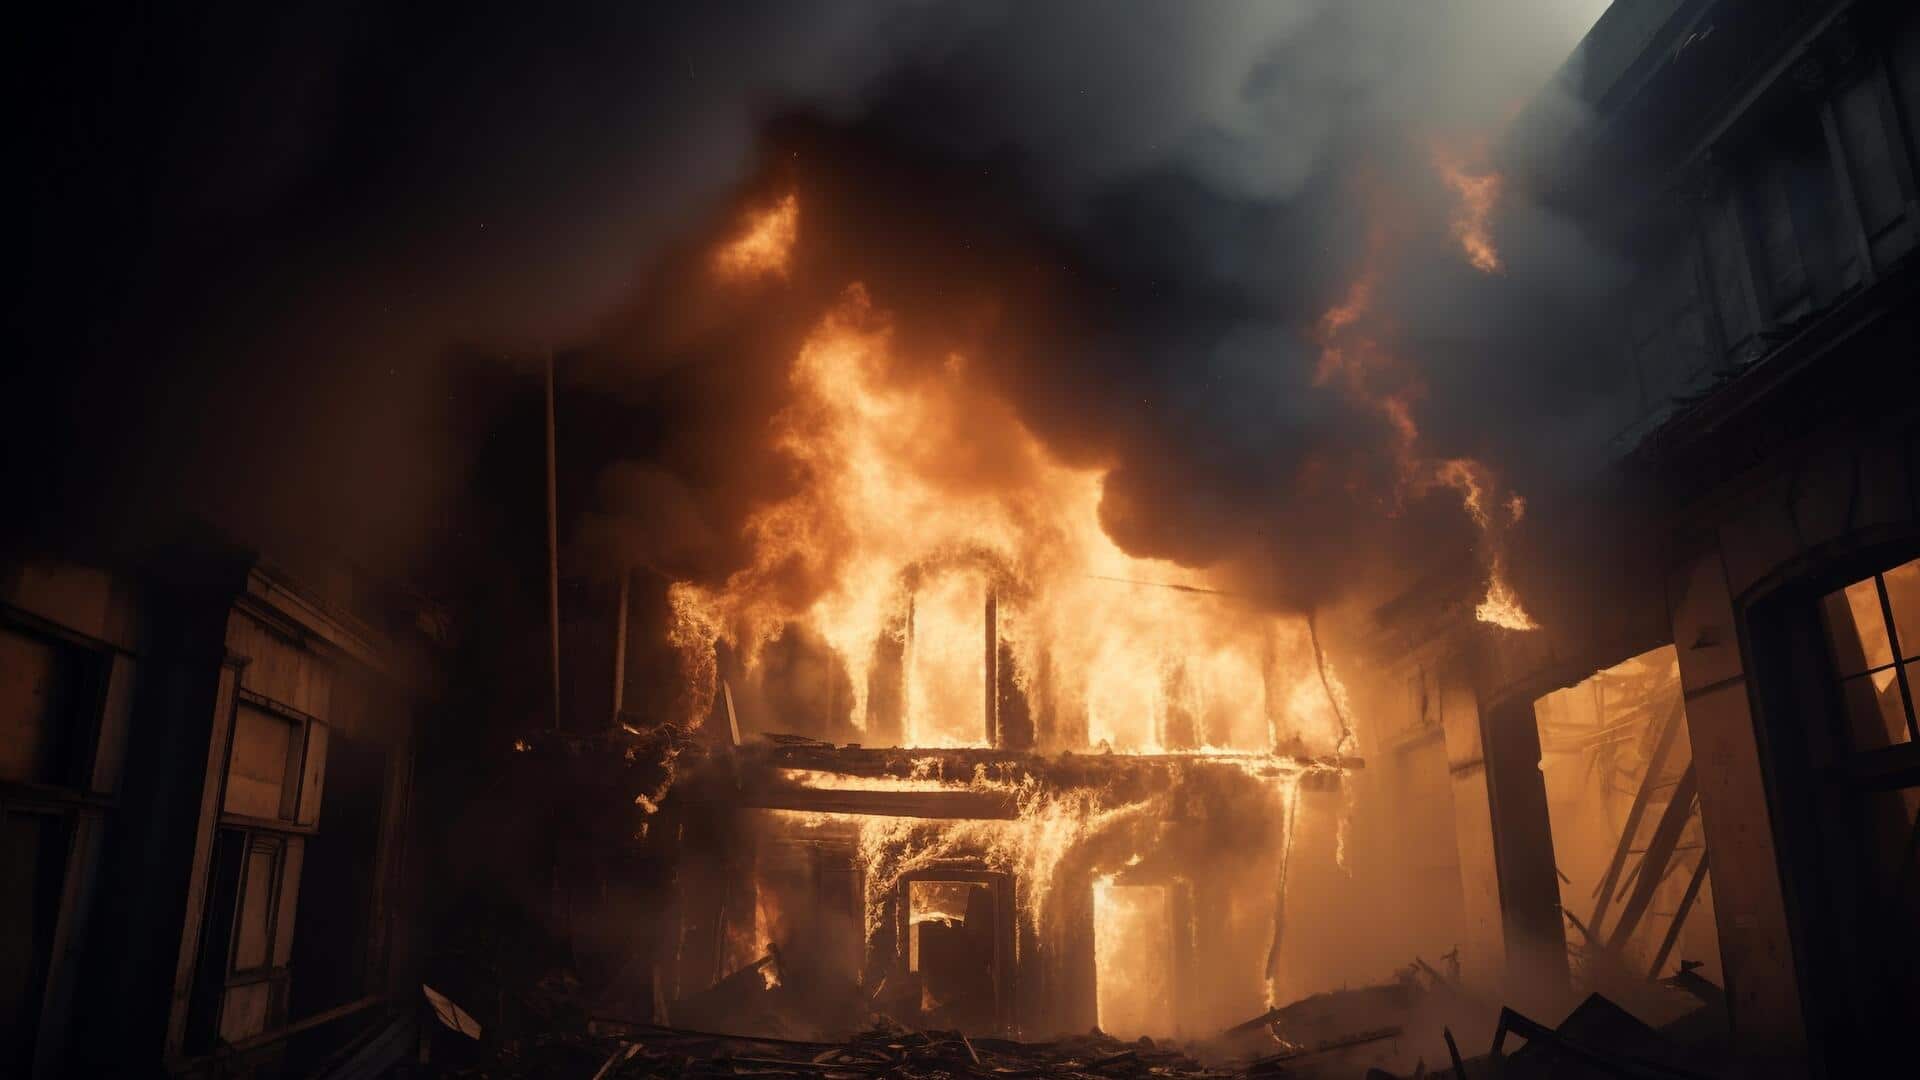 उत्तर प्रदेश: बरेली में घर पर बनी झोपड़ी में लगी आग, 3 बच्चे जिंदा जले